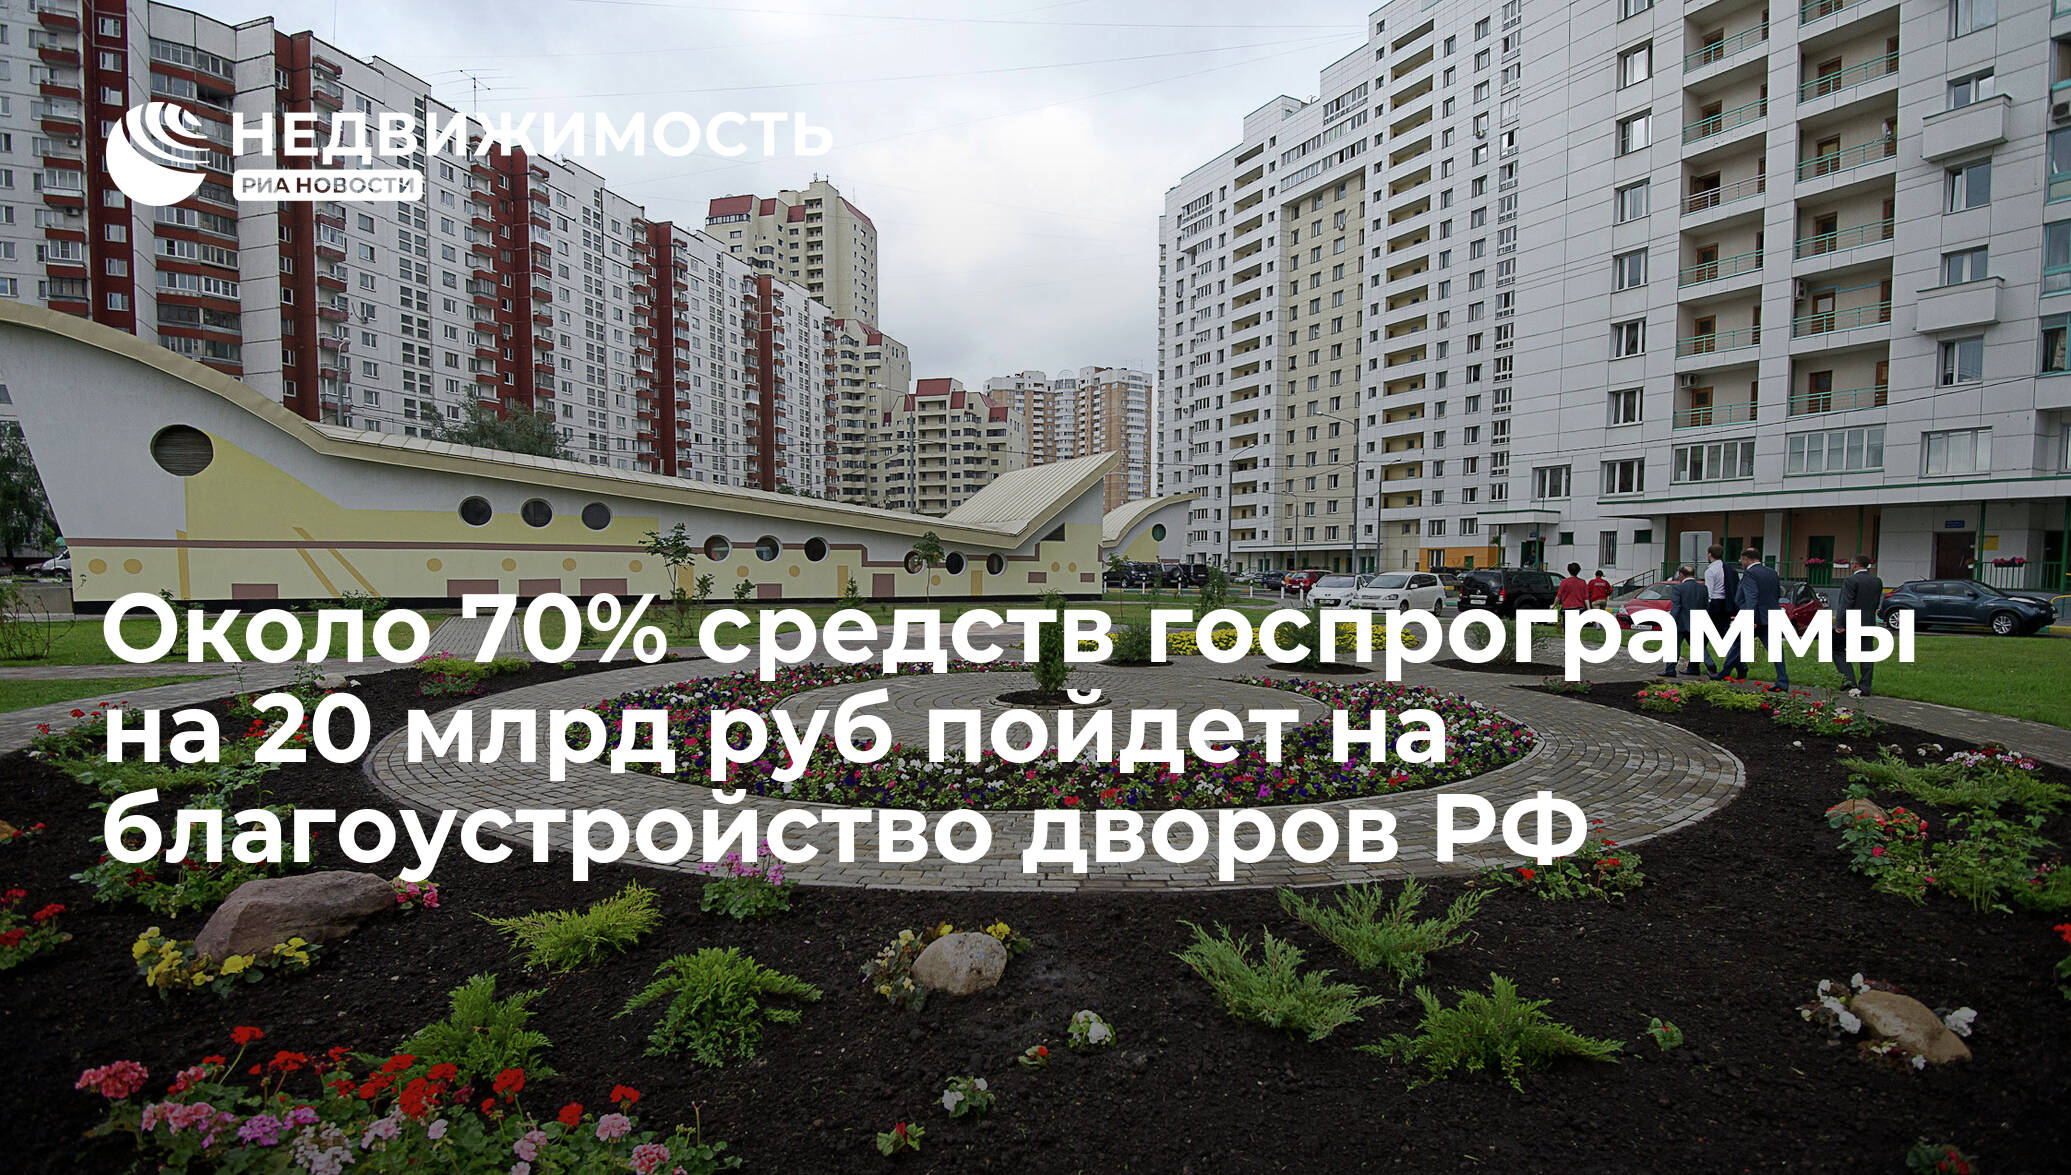 7 особенностей российских дворов, которые удивляют иностранцев | brodude.ru